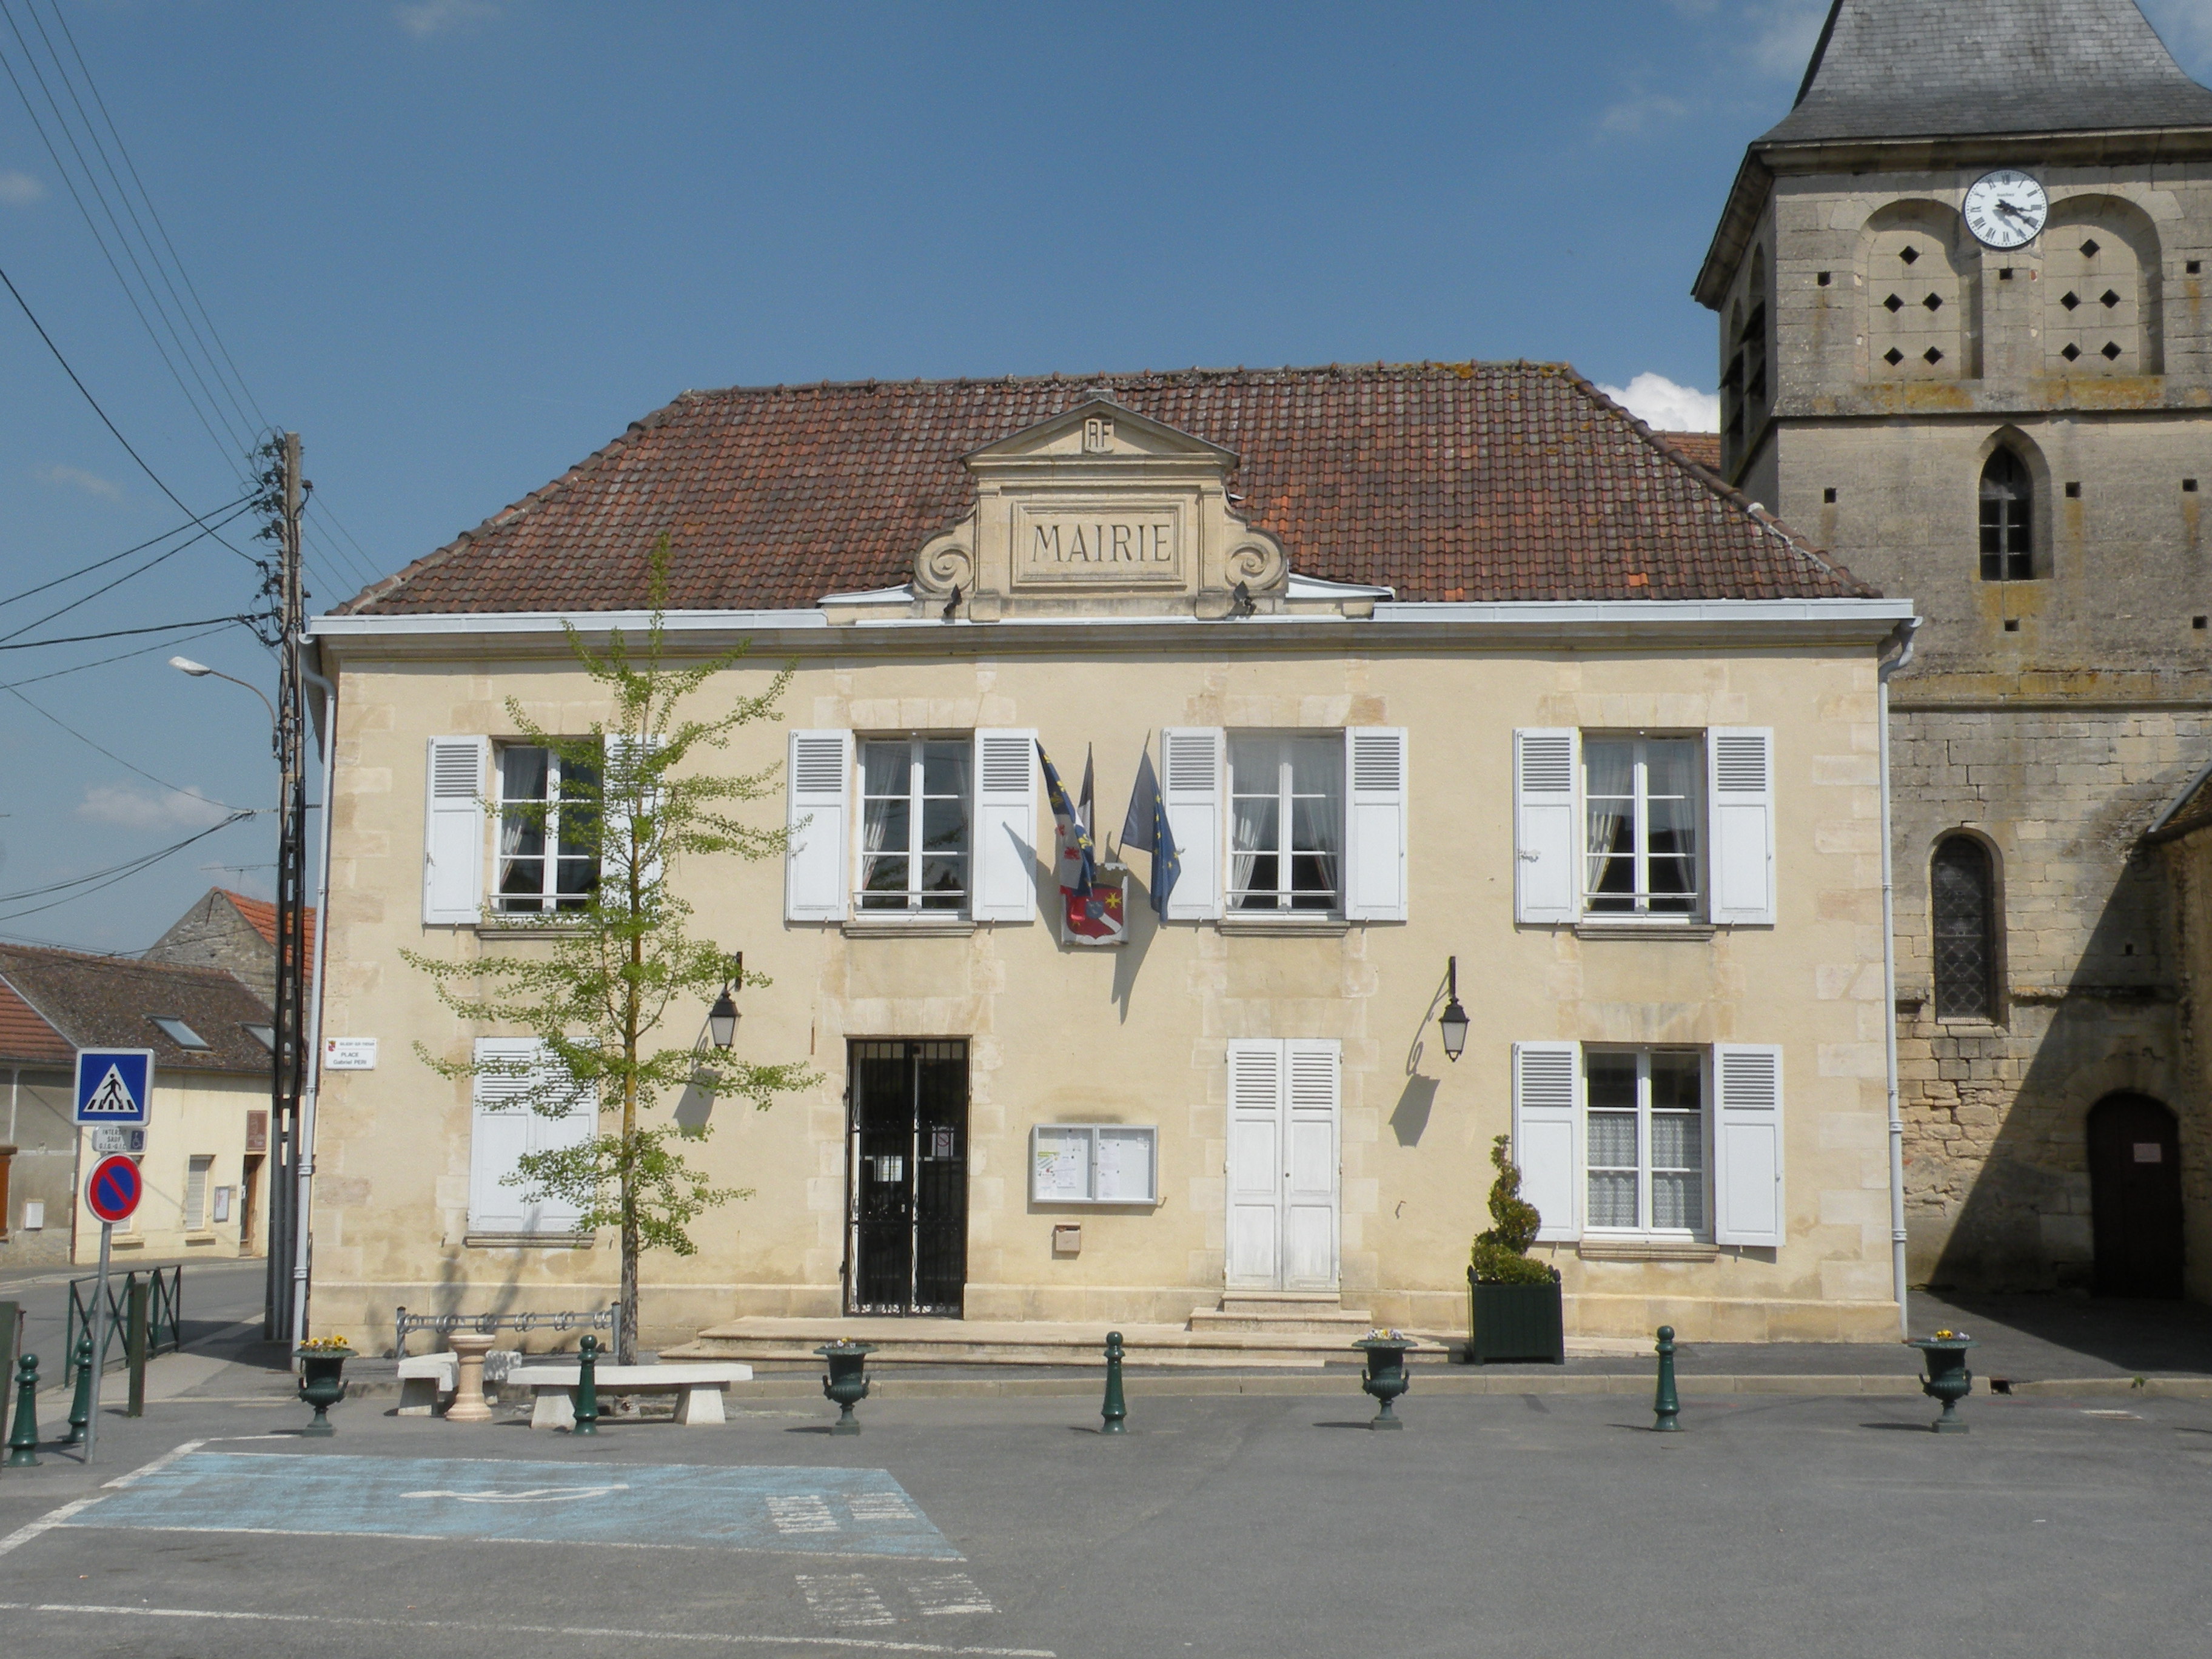 Balagny-sur-thérain